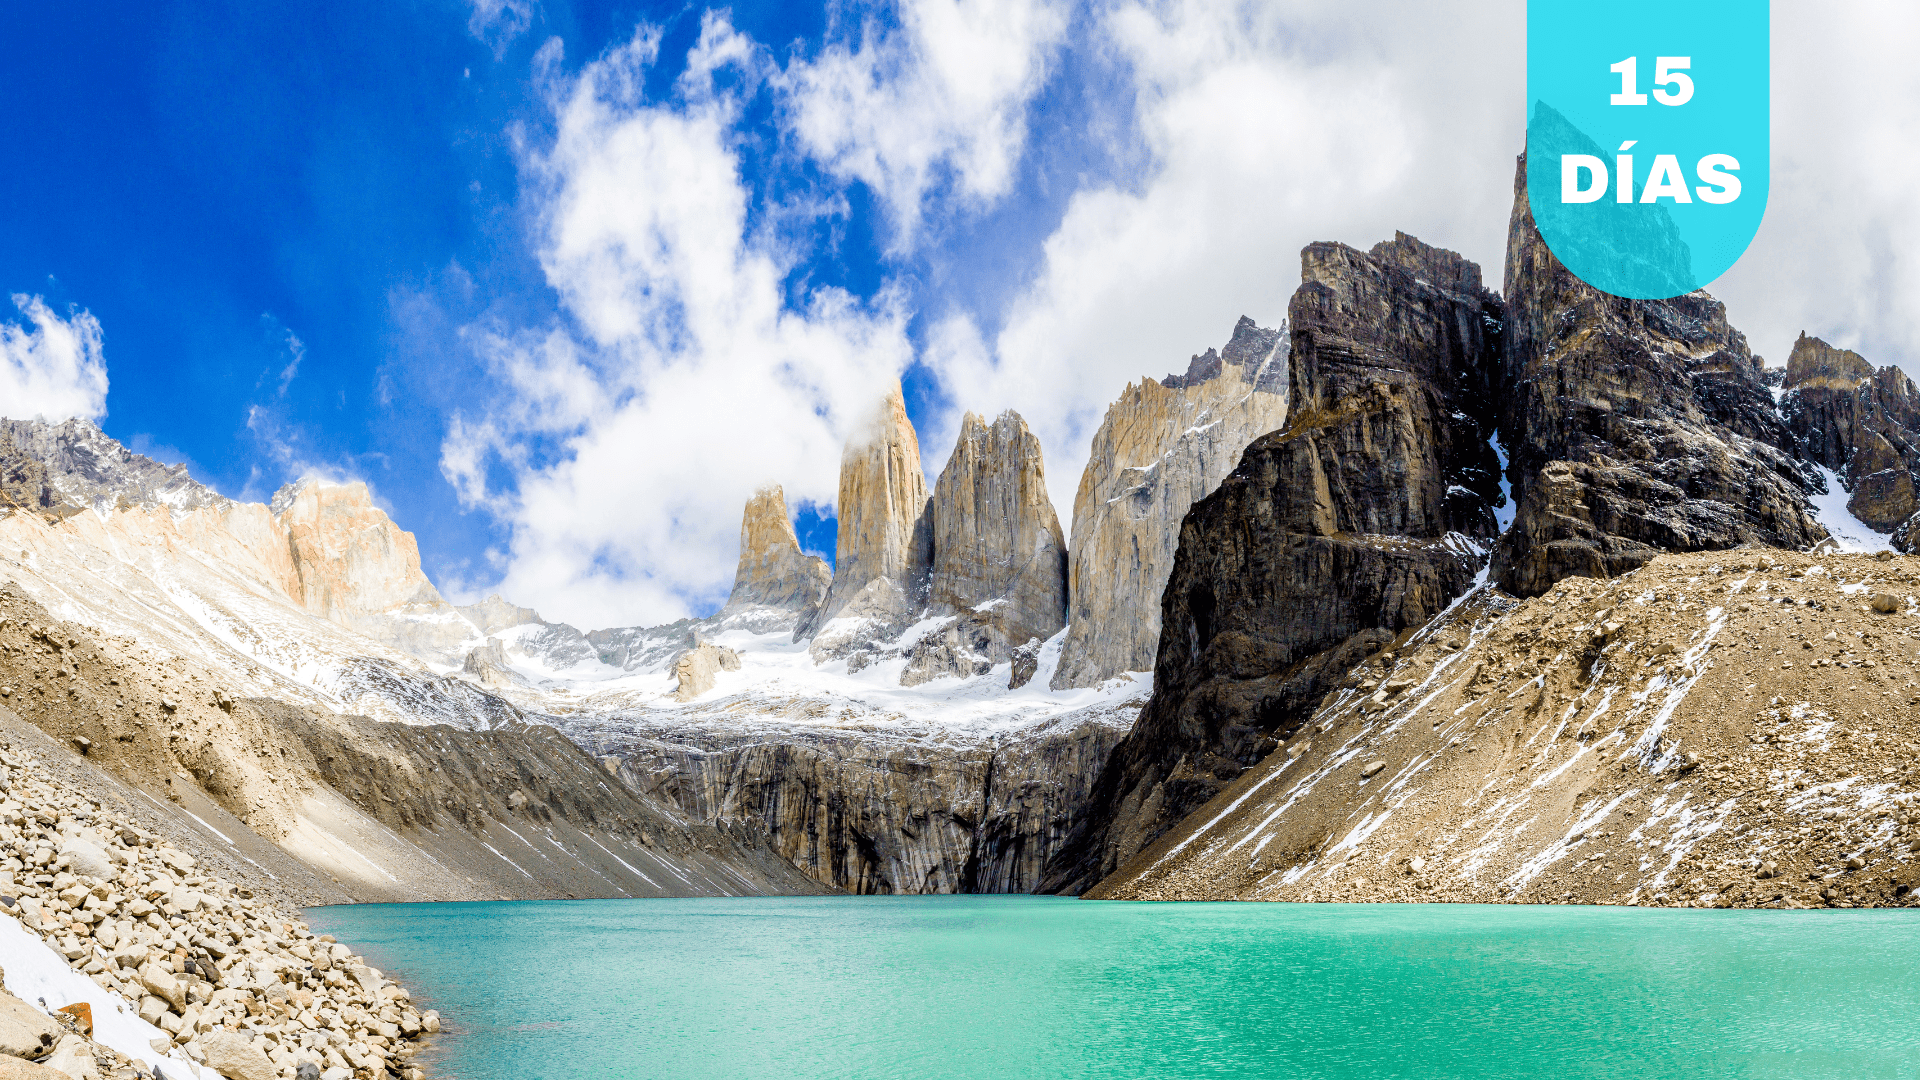 Patagonia Argentina y Chilena